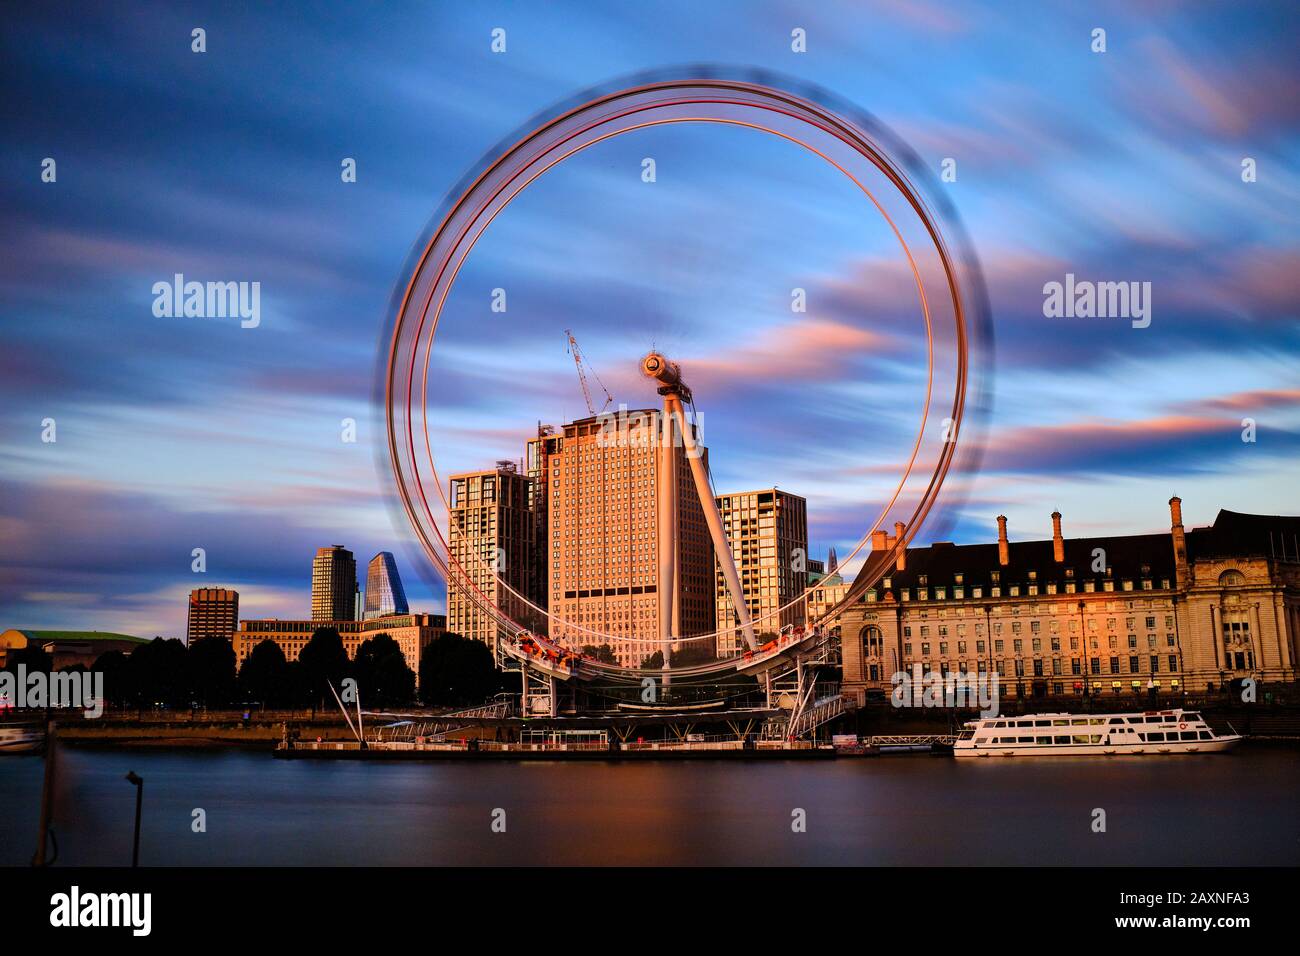 Das London Eye oder das Millennium Wheel ist ein ausladungsarreiertes Beobachtungsrad an der Südbank der Themse in London. Stockfoto